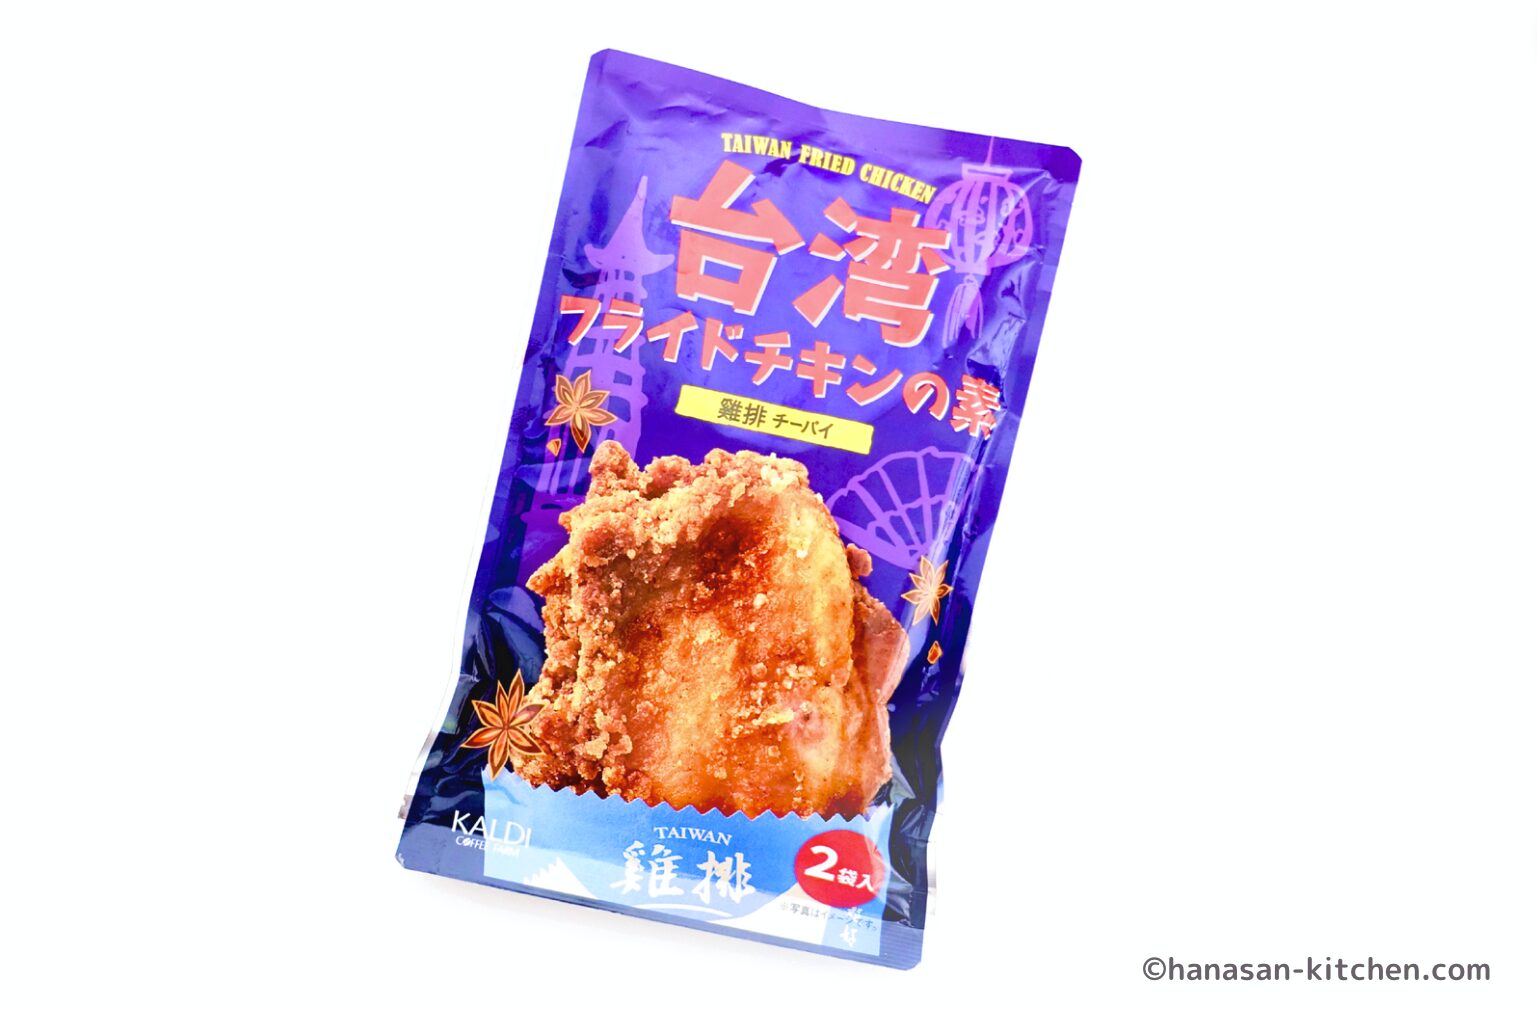 カルディで販売されている台湾フライドチキンの素のパッケージ